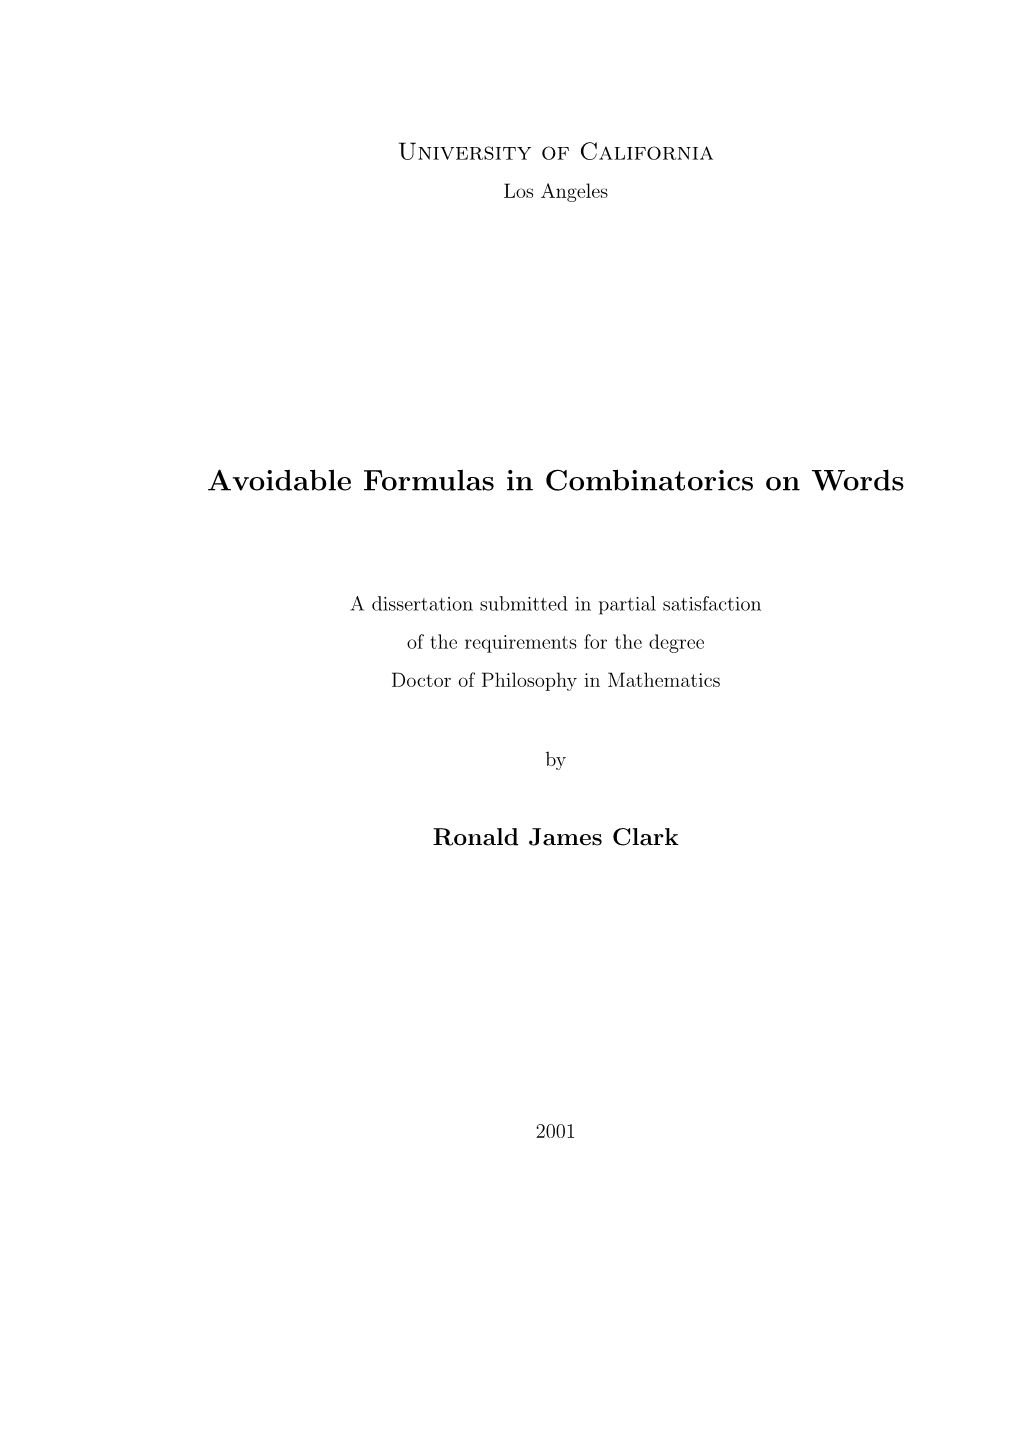 Avoidable Formulas in Combinatorics on Words